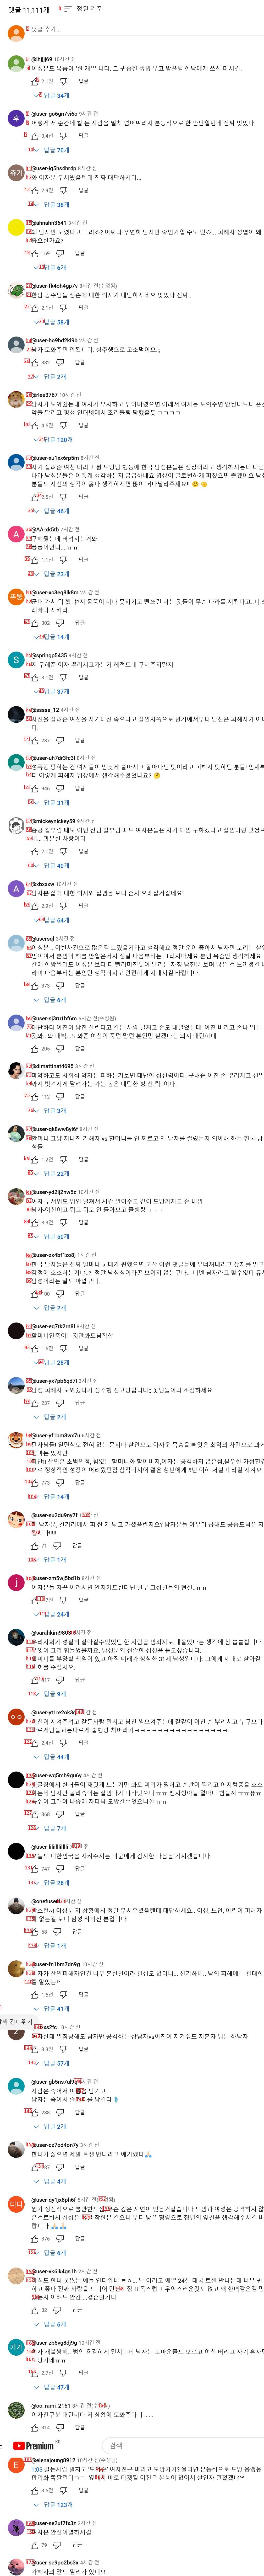 꼴페미년들이 장악한 엠빙신 유튜브 댓글창 근황